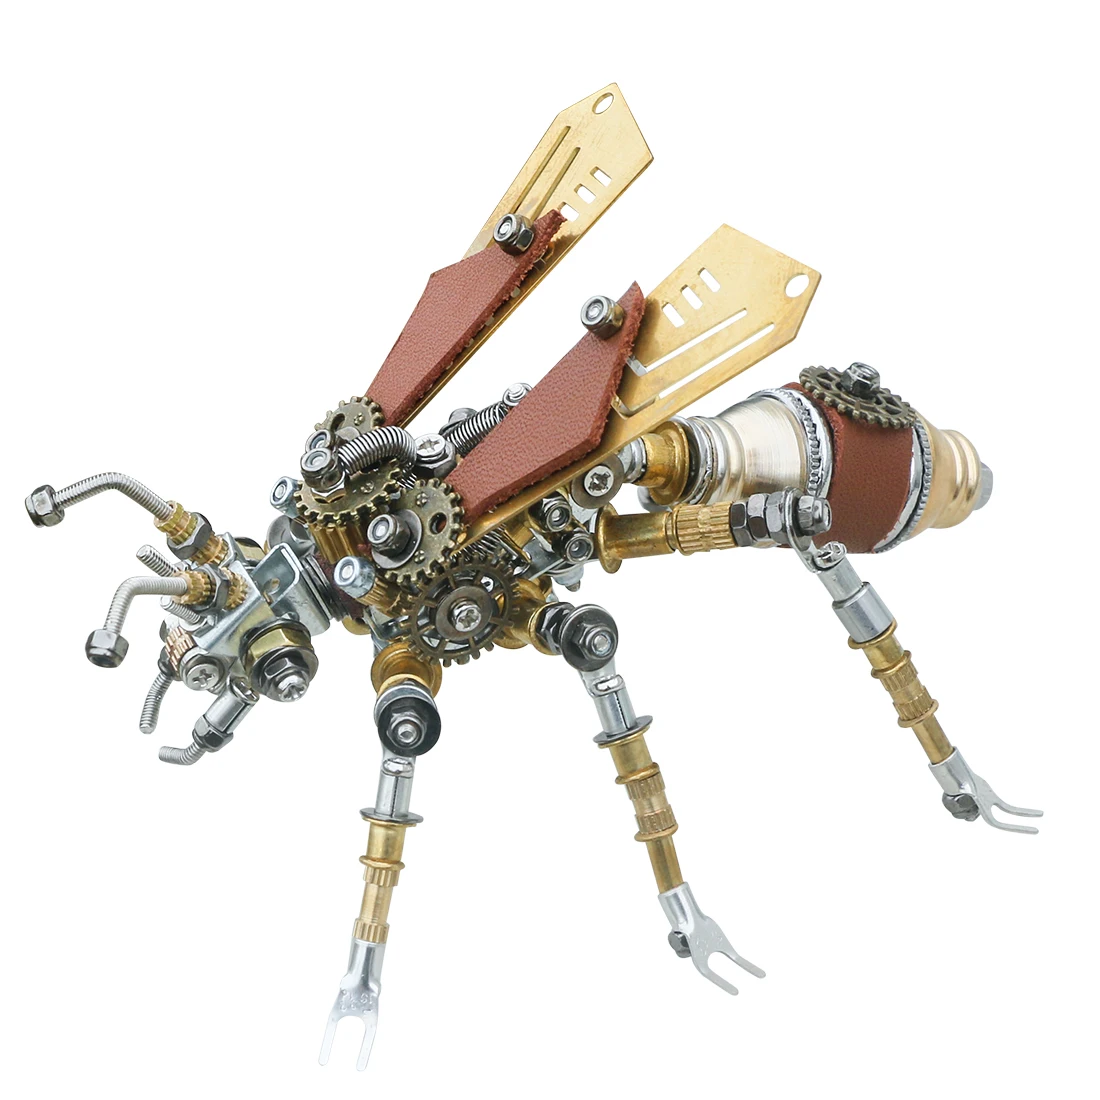 Kit de construcción 3D de Metal para niños, rompecabezas de insectos de 290 piezas, montaje mecánico, manualidades, regalo para niños, termitas